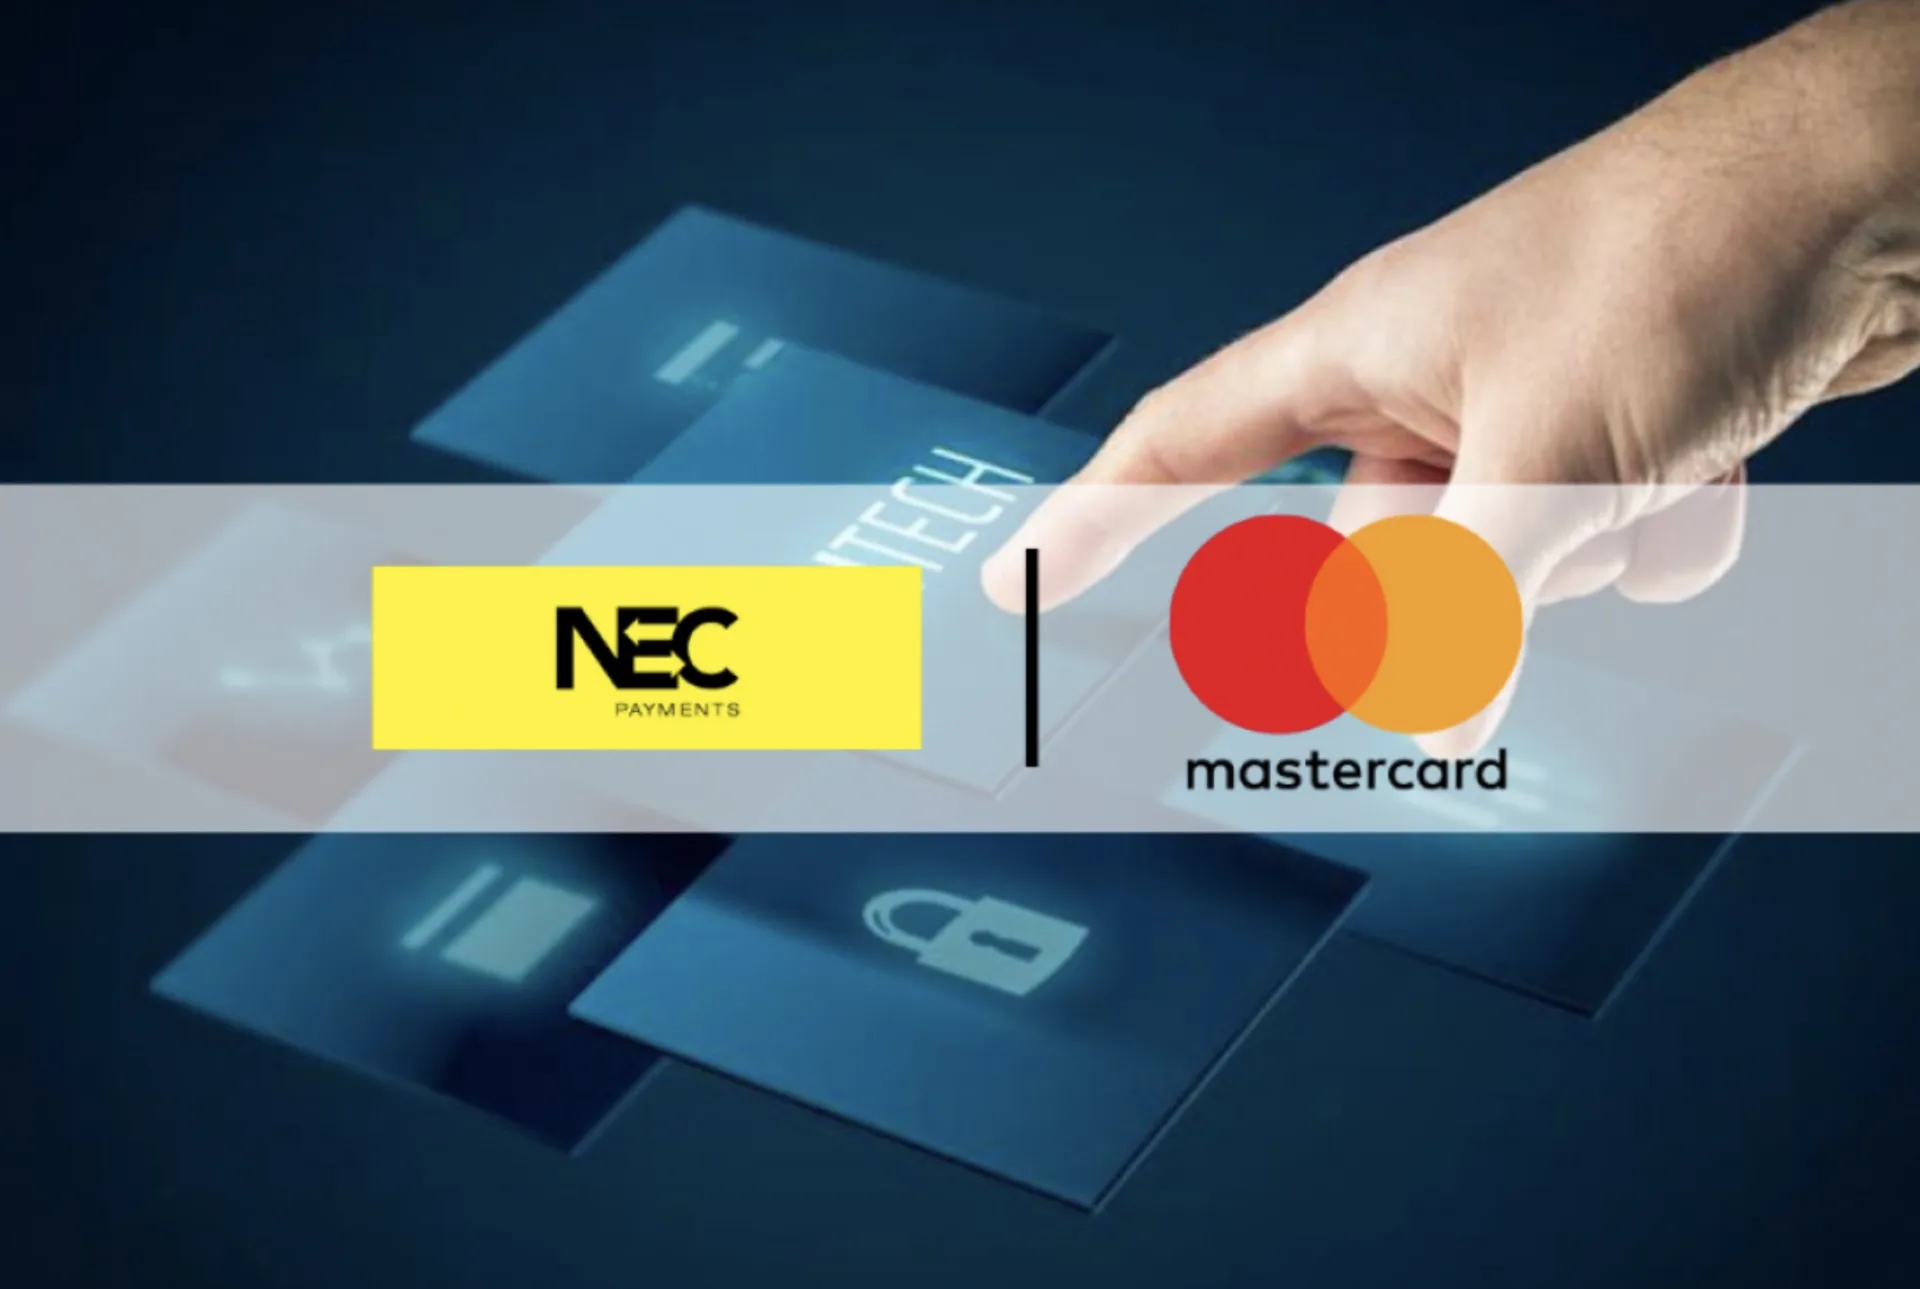 Mastercard và NEC hợp tác thúc đẩy thanh toán tại cửa hàng bằng công nghệ sinh trắc học